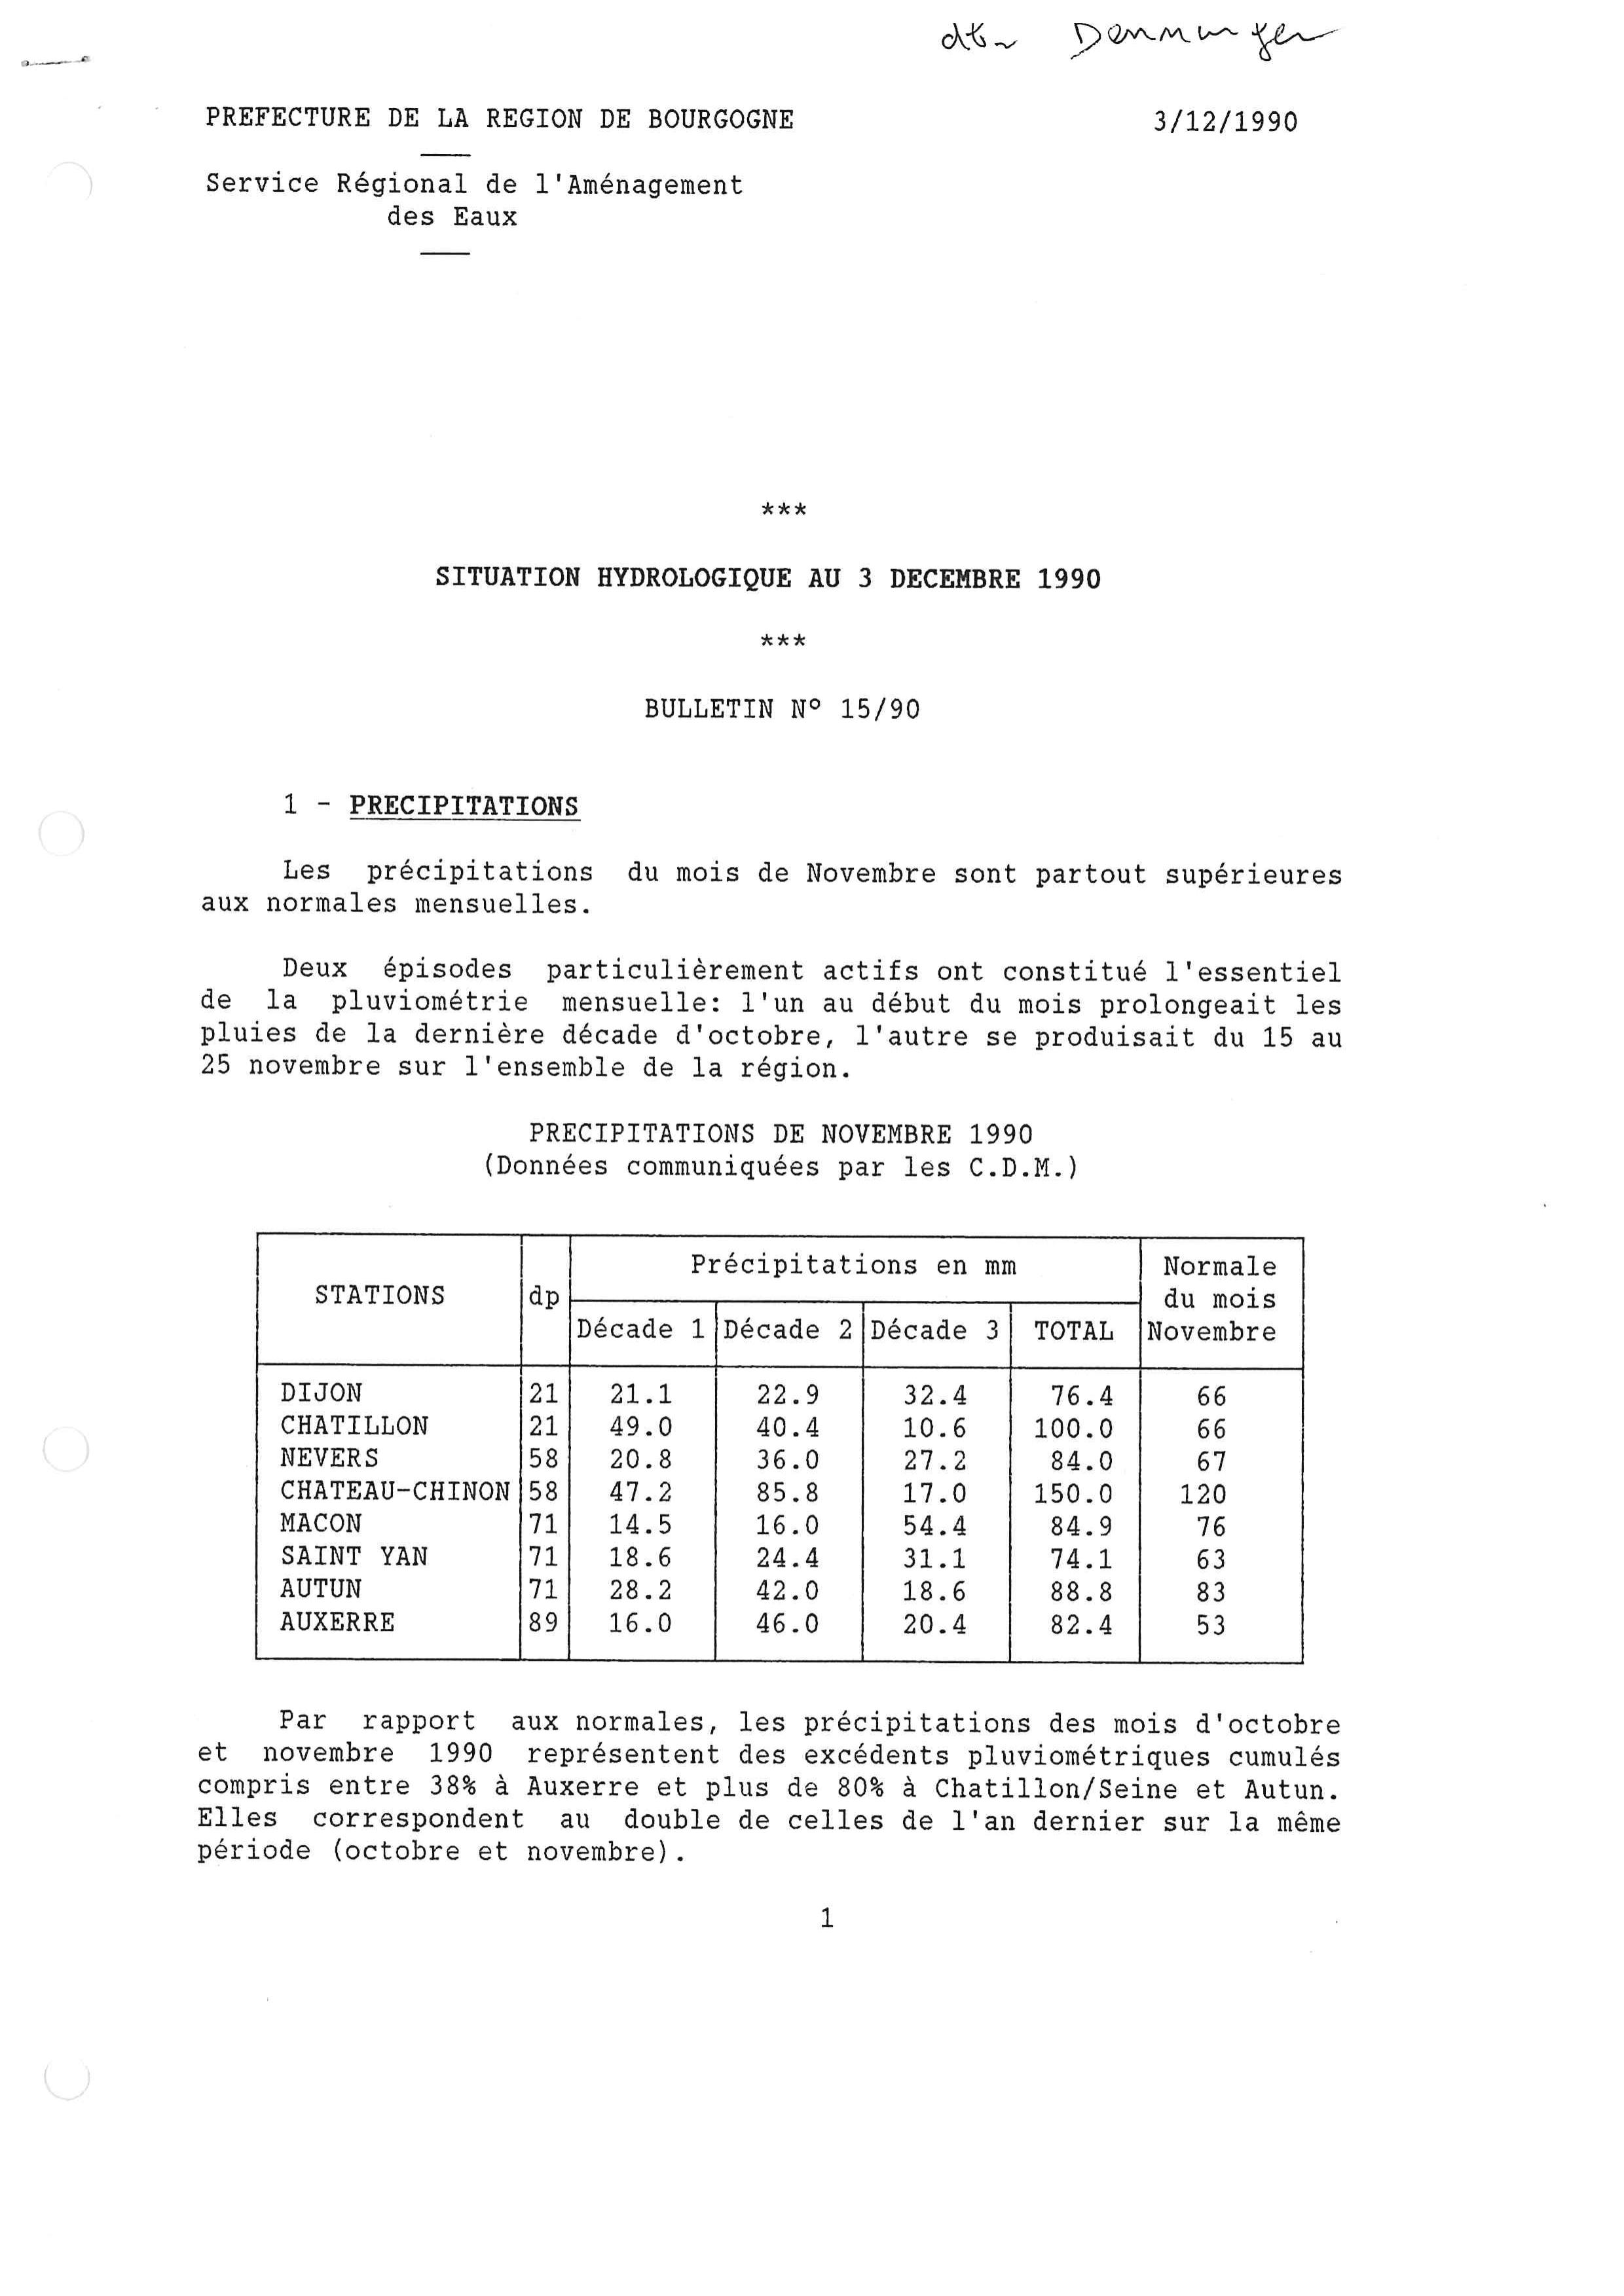 Bulletin hydrologique du mois de novembre 1990